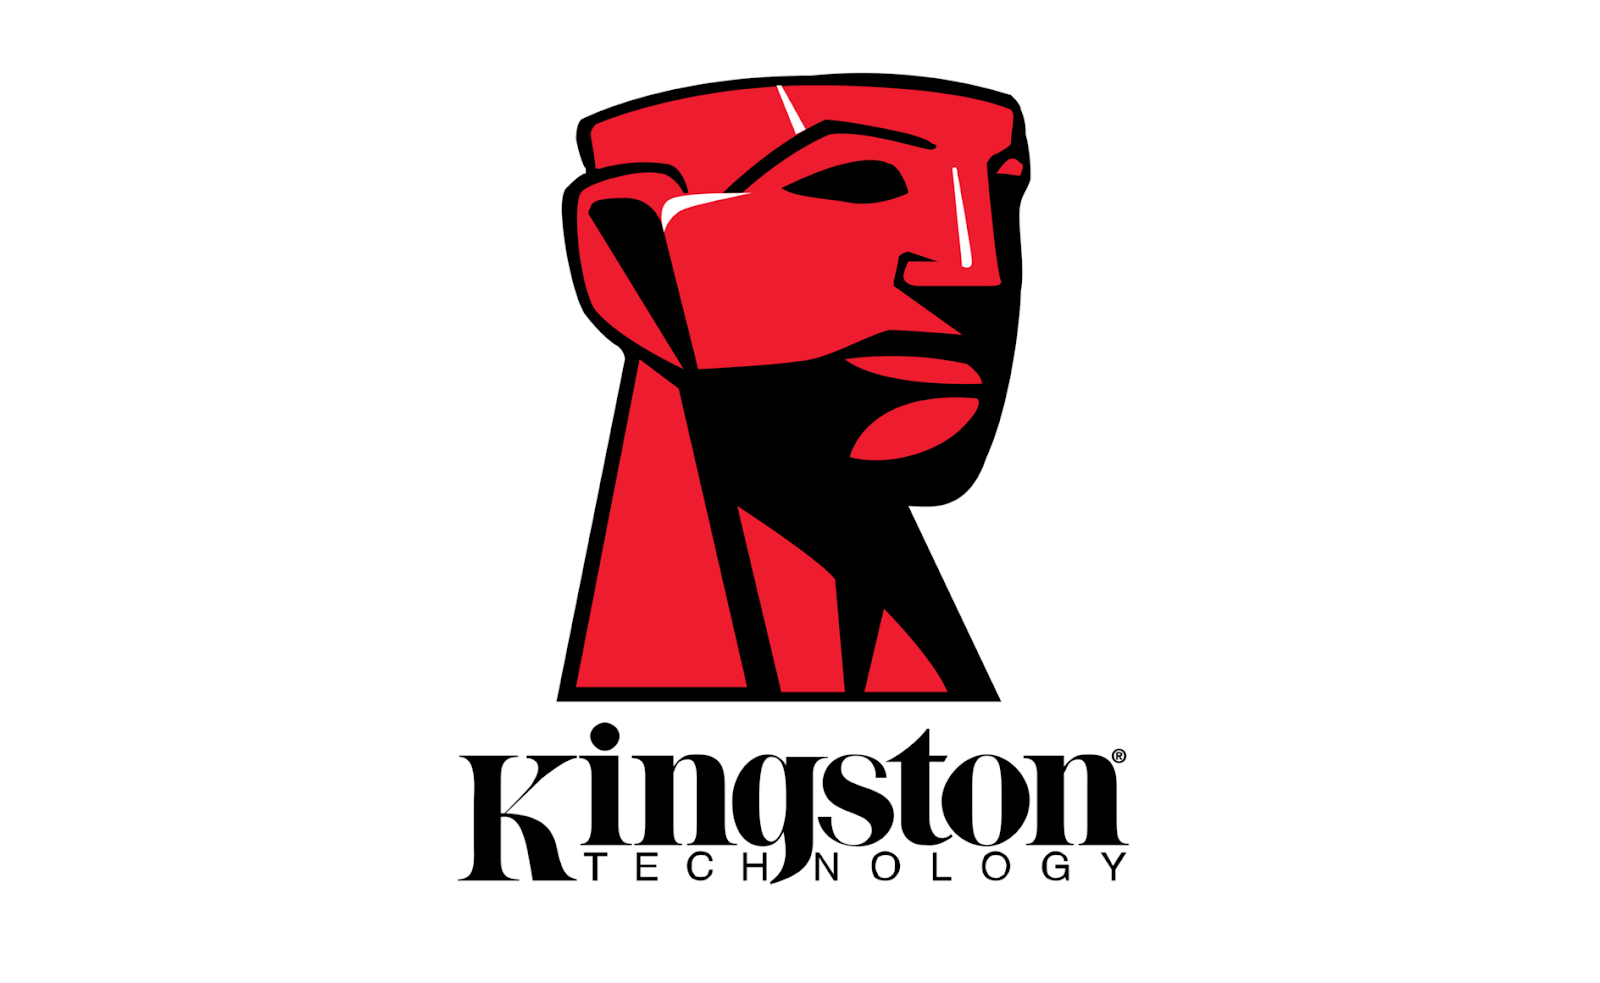 Foto de Kingston Technology, una de «Las empresas privadas más grandes de Estados Unidos», según Forbes